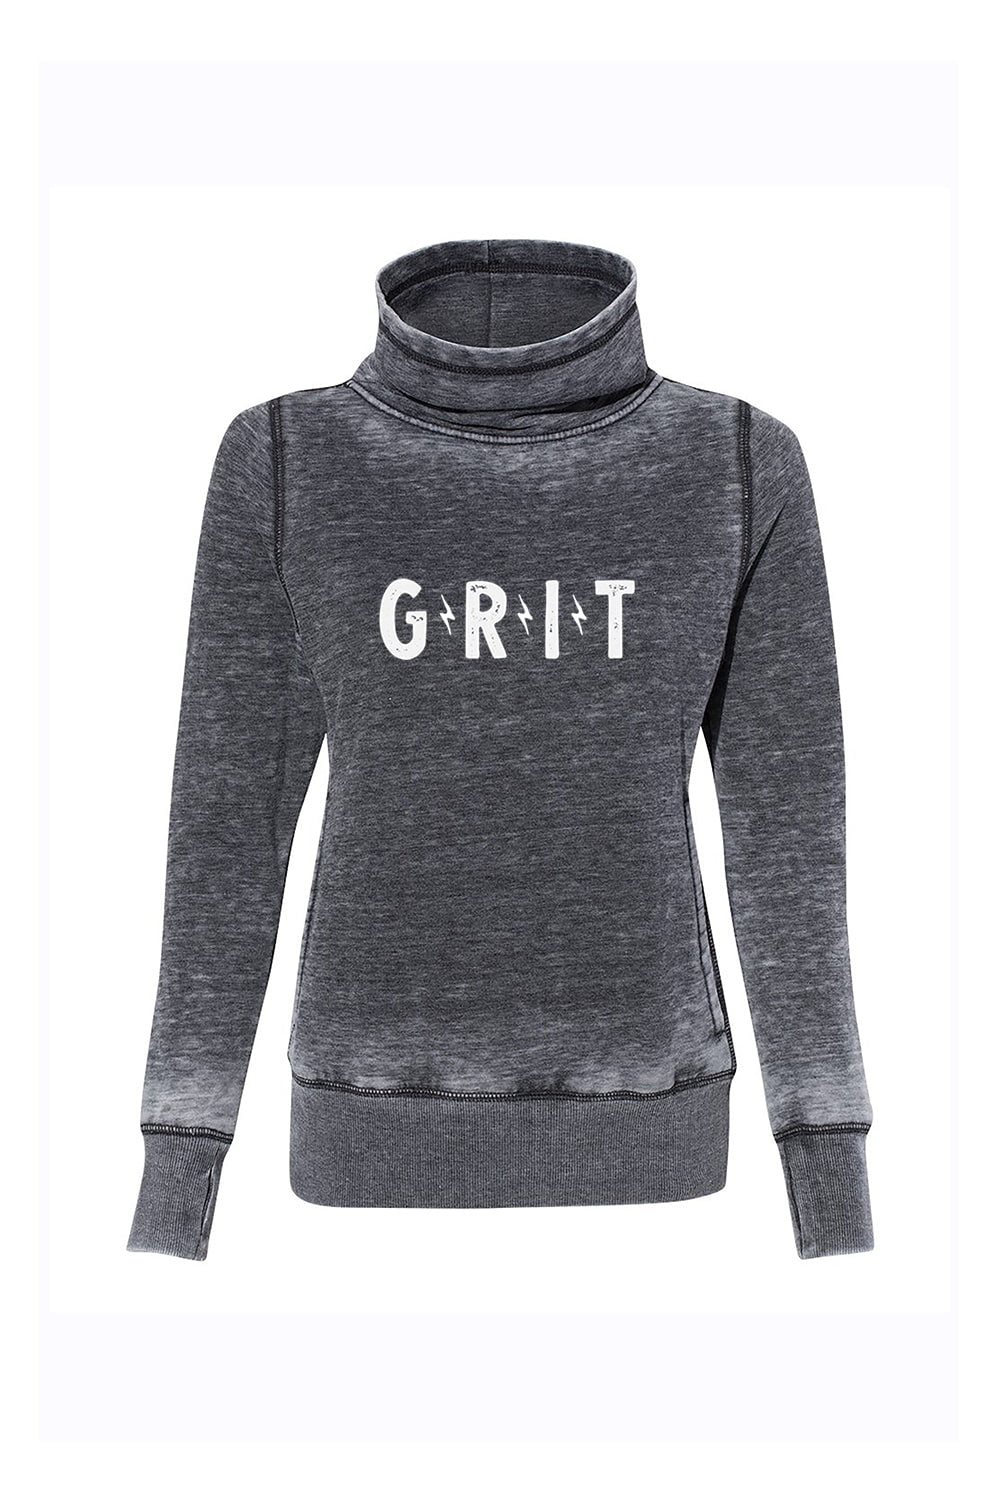 Sarah Marie Design Studio Sweatshirt GRIT Women's Sweatshirt